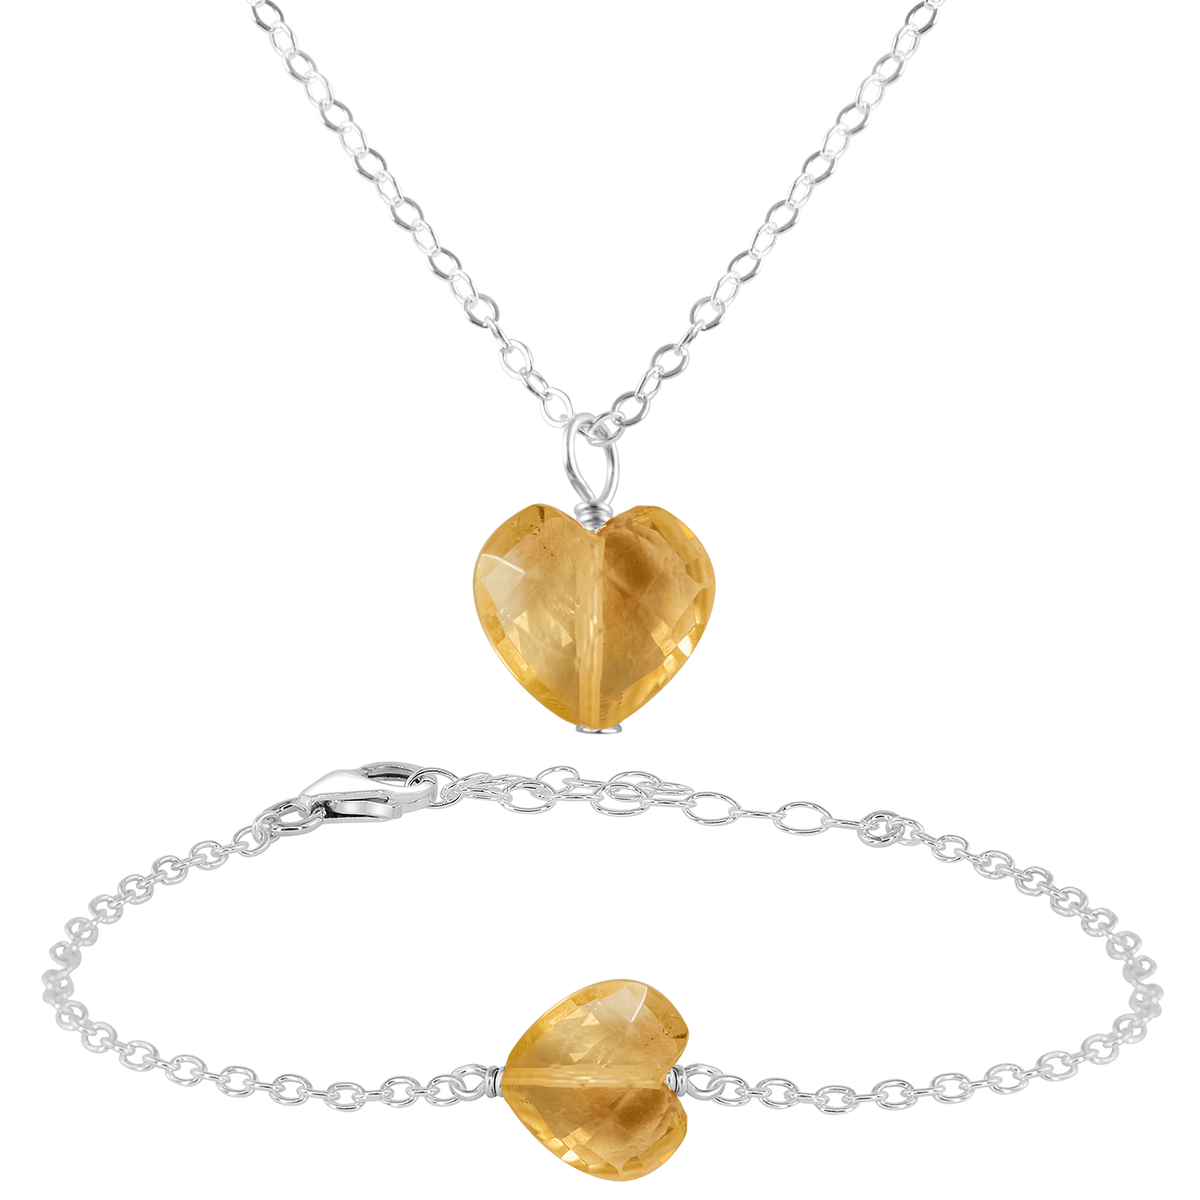 Citrine Crystal Heart Jewellery Set - Citrine Crystal Heart Jewellery Set - Sterling Silver / Cable / Necklace & Bracelet - Luna Tide Handmade Crystal Jewellery